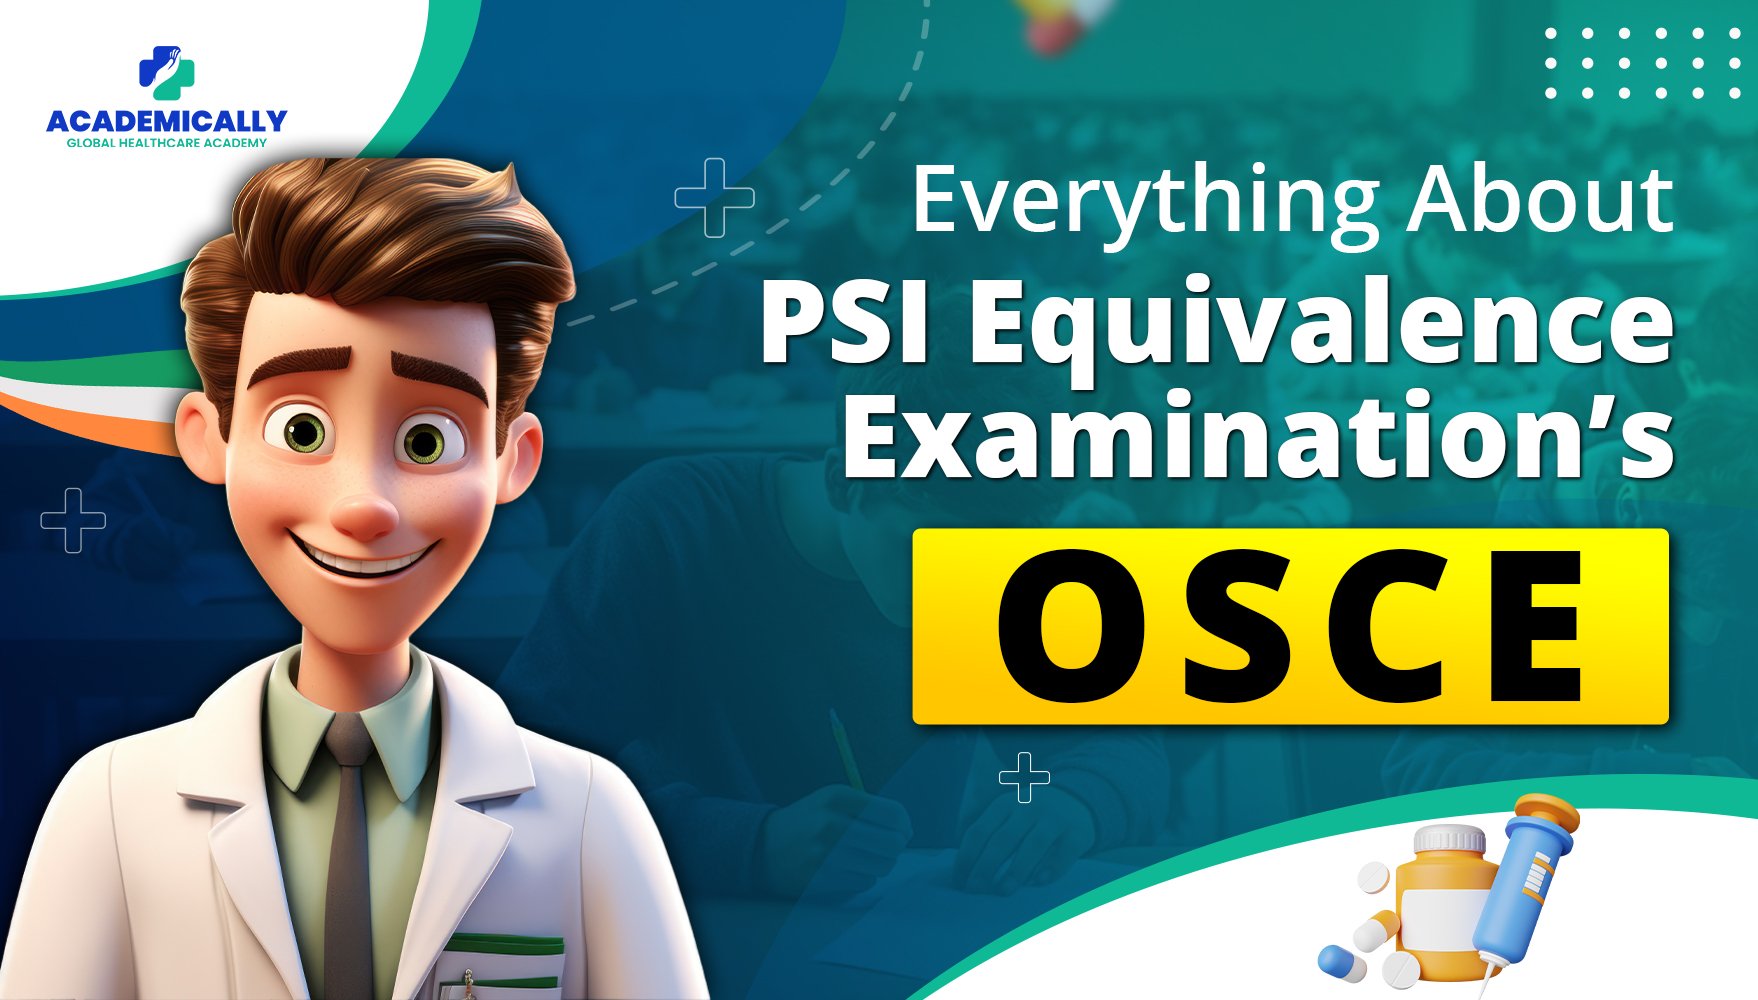 PSI Equivalence Examination’s OSCE